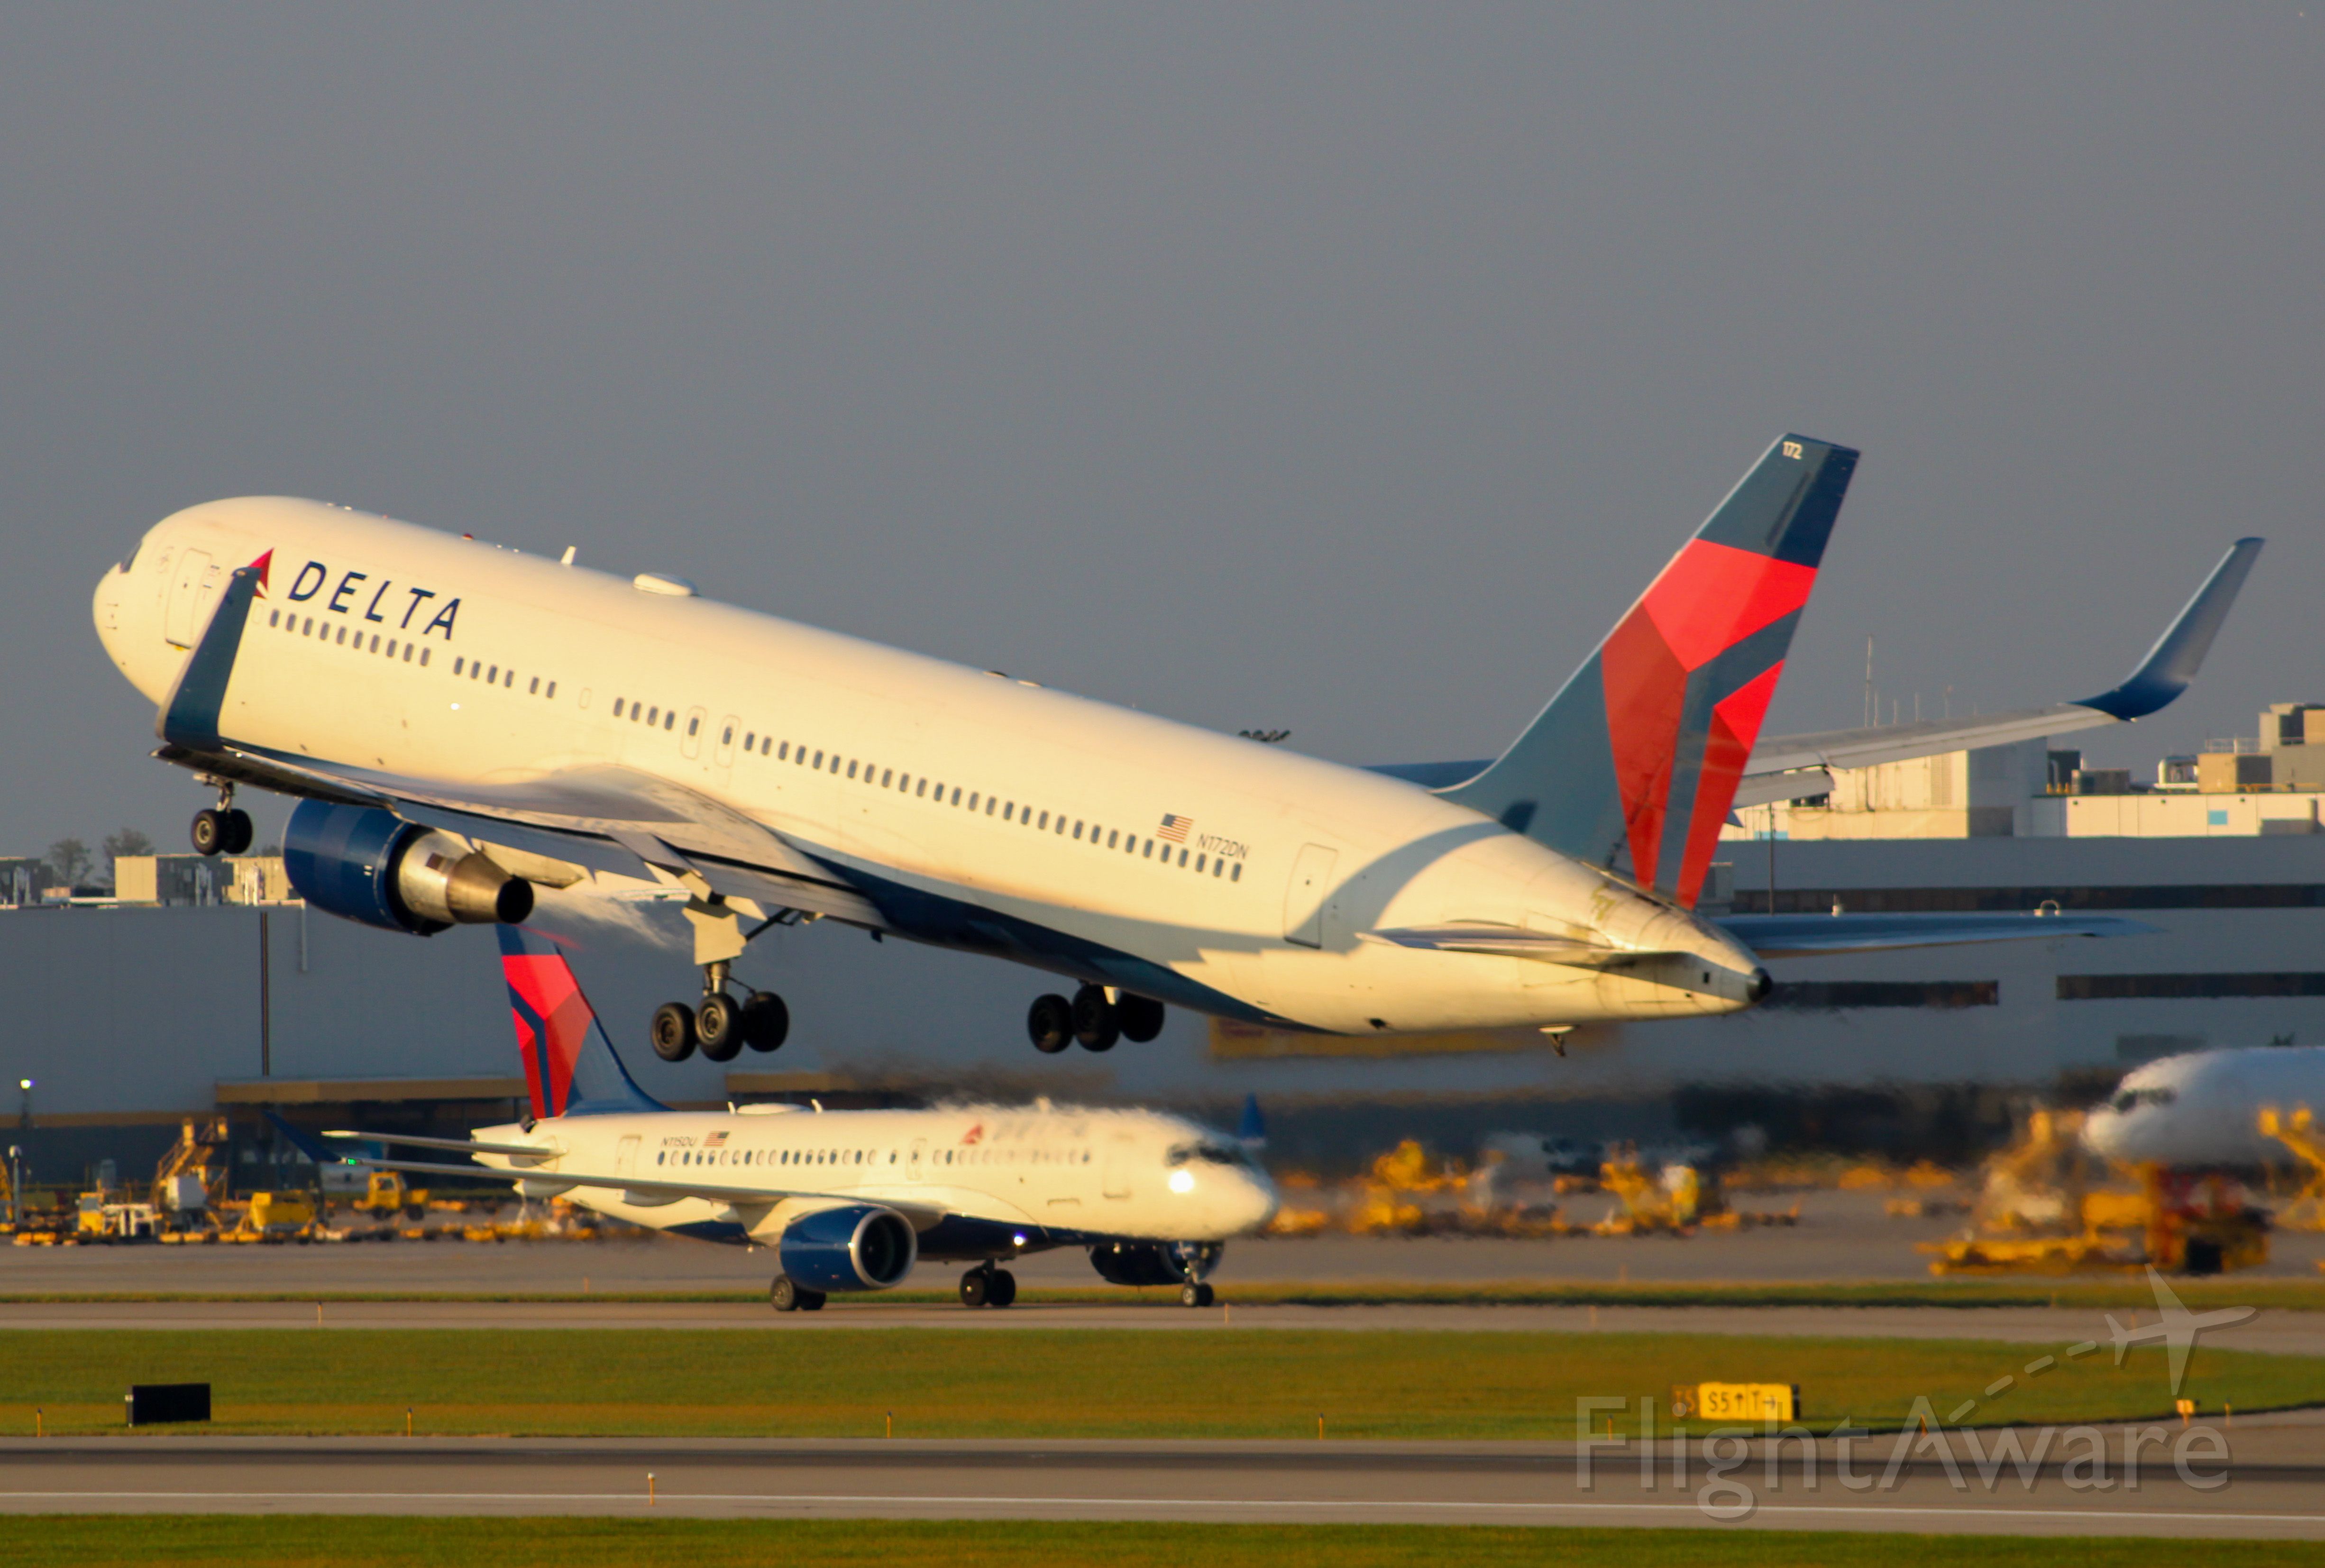 BOEING 767-300 (N172DN) - Delta 767-300 departing RWY 18L.